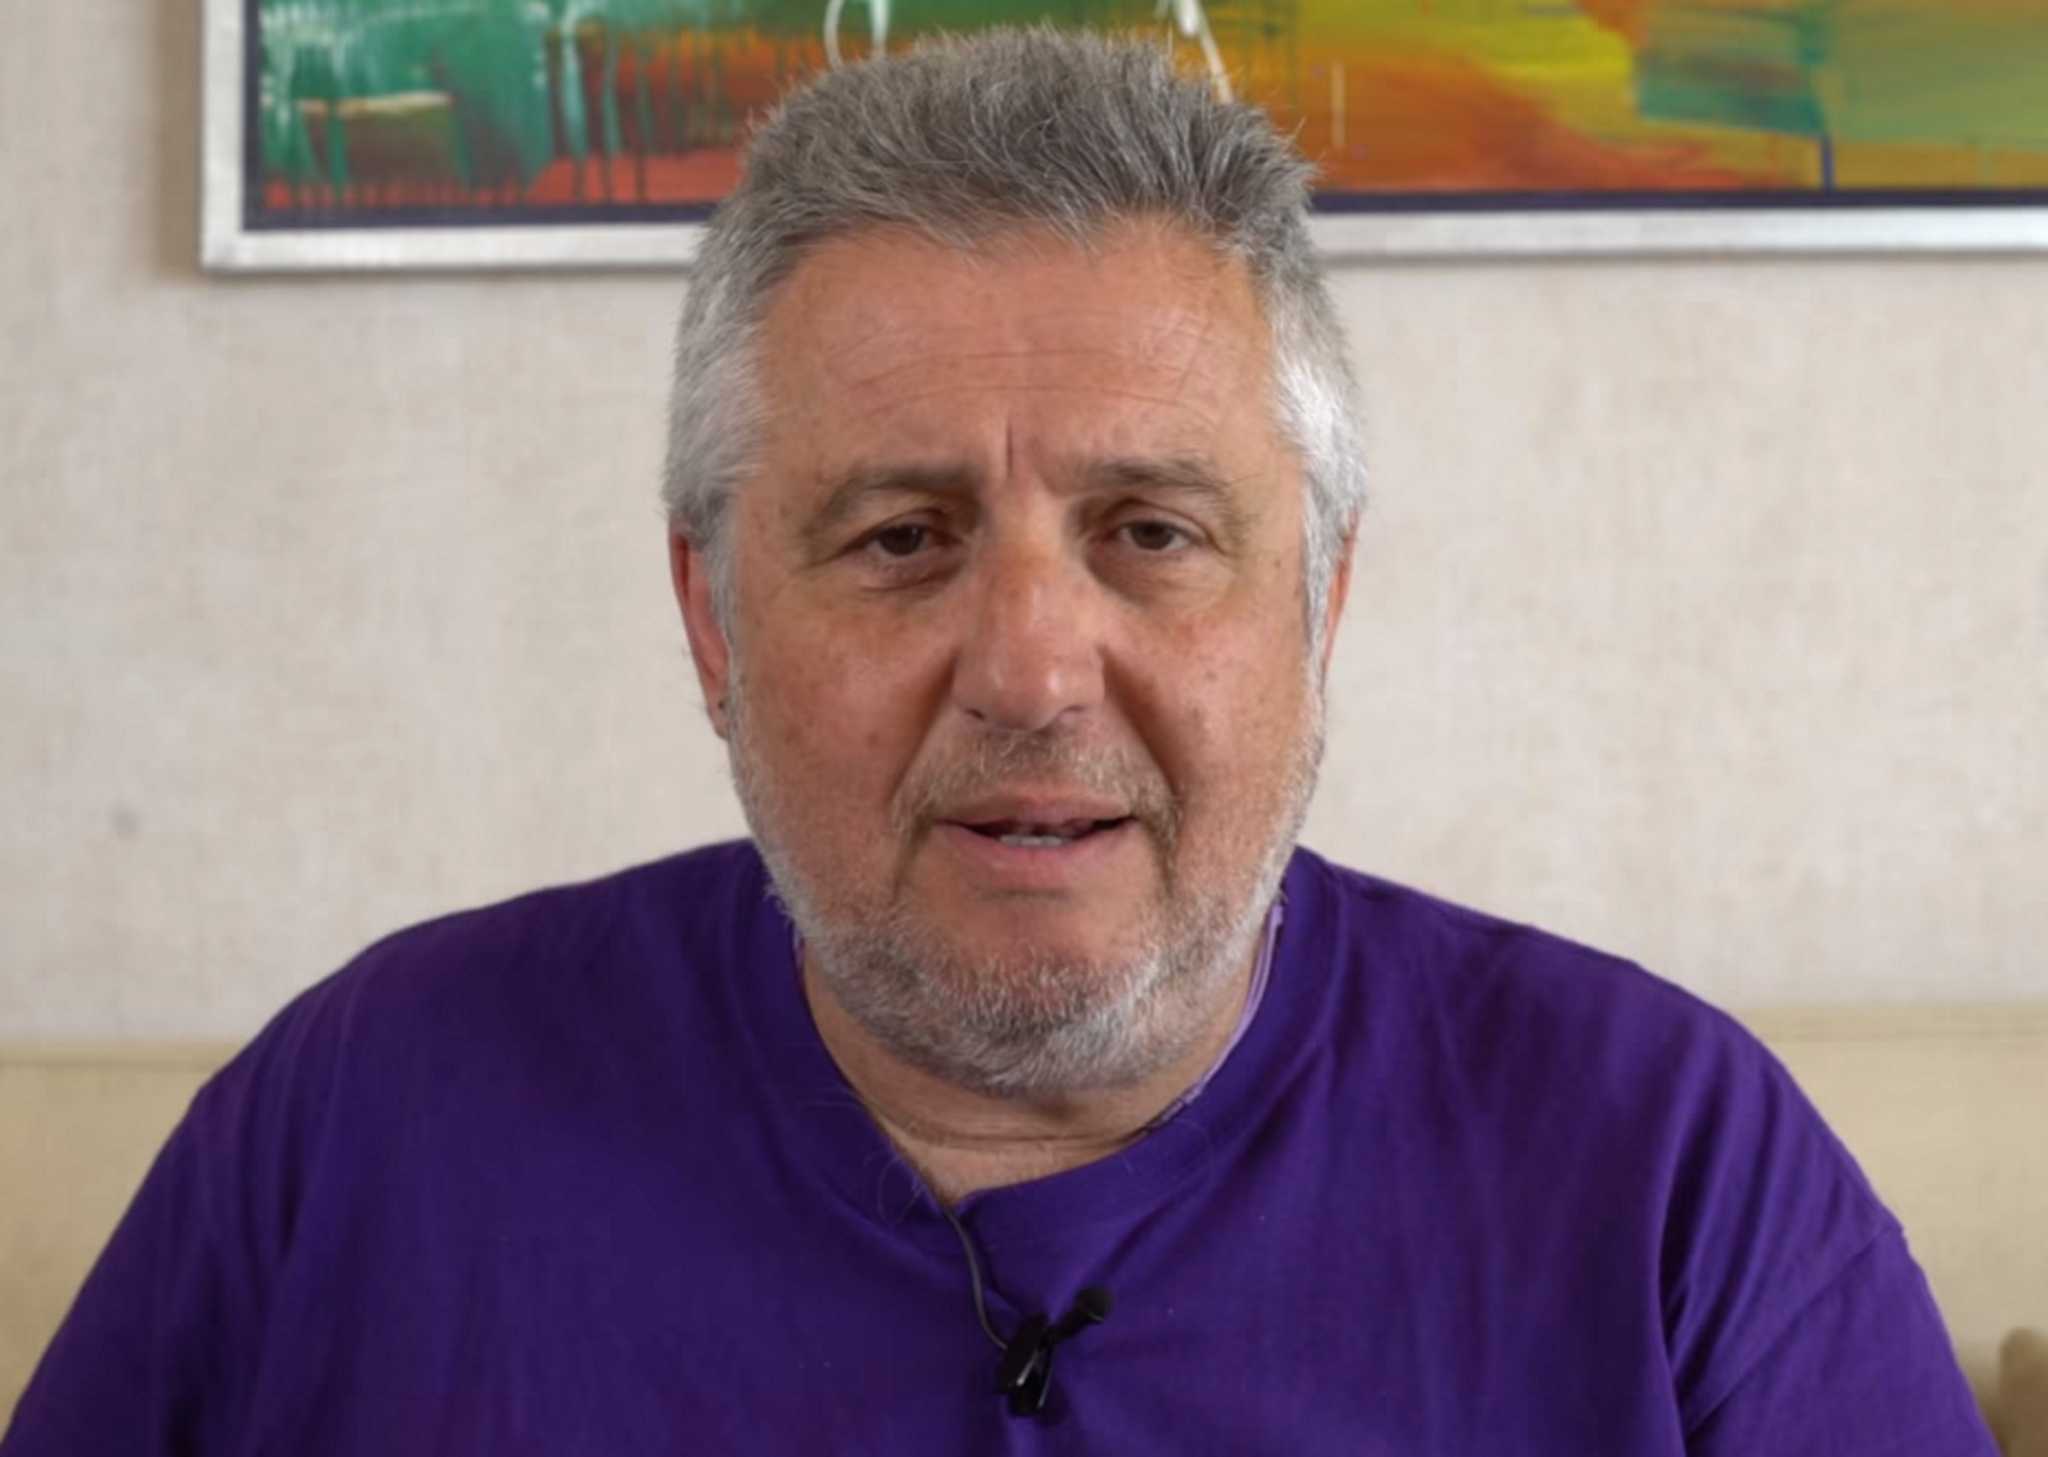 Στάθης Παναγιωτόπουλος: ένταλμα σύλληψης πιθανόν τις επόμενες ώρες